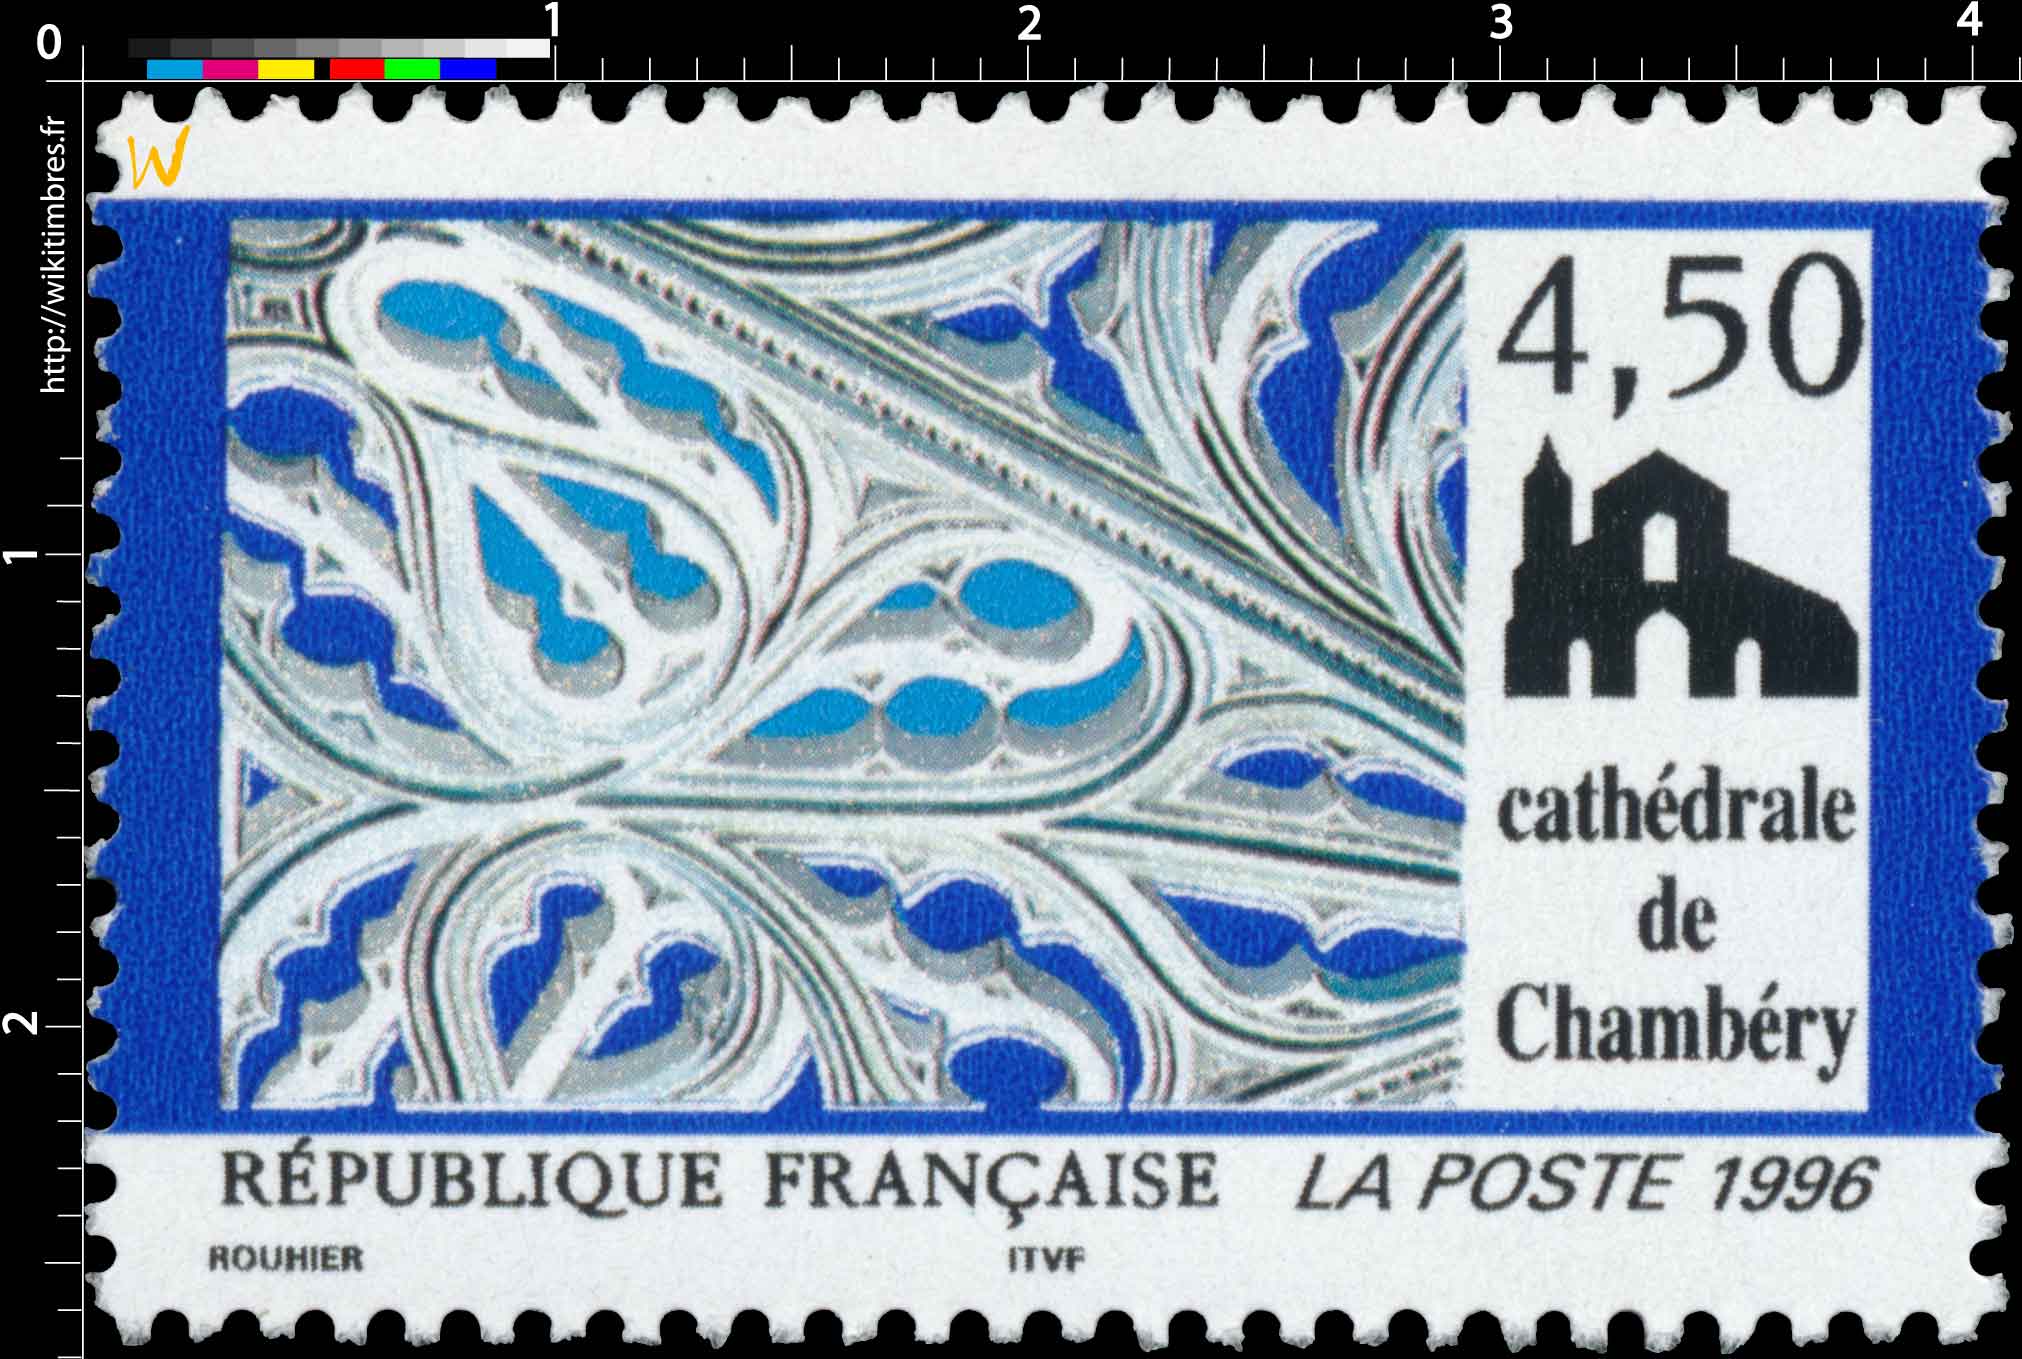 1996 Cathédrale de Chambéry